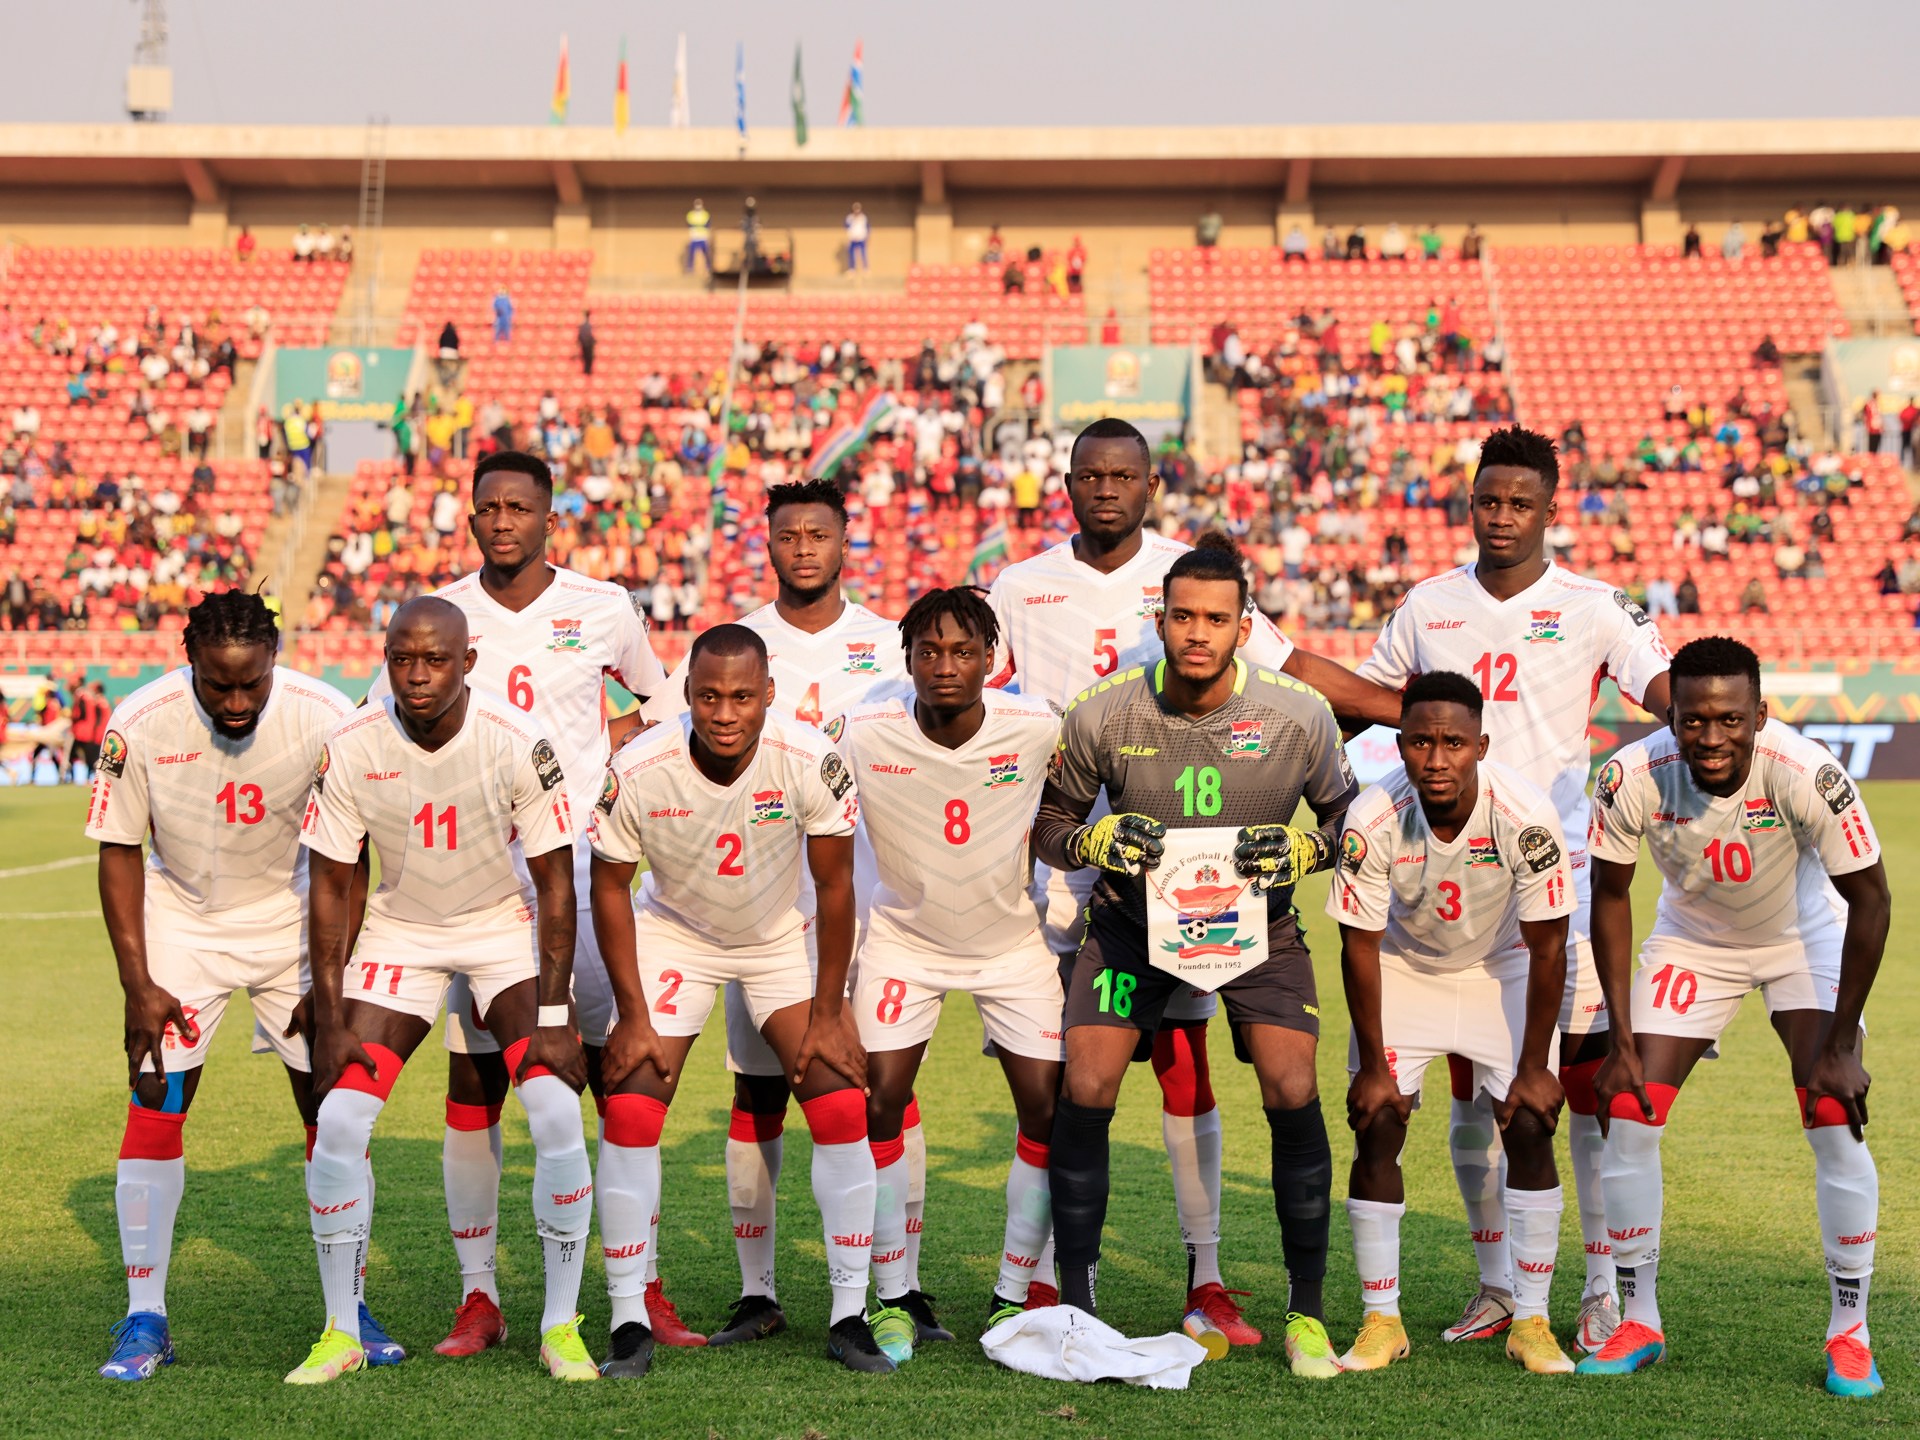 غامبيا في كأس أفريقيا 2023.. موعد مع مفاجأة جديدة في البطولة القارية | رياضة – البوكس نيوز